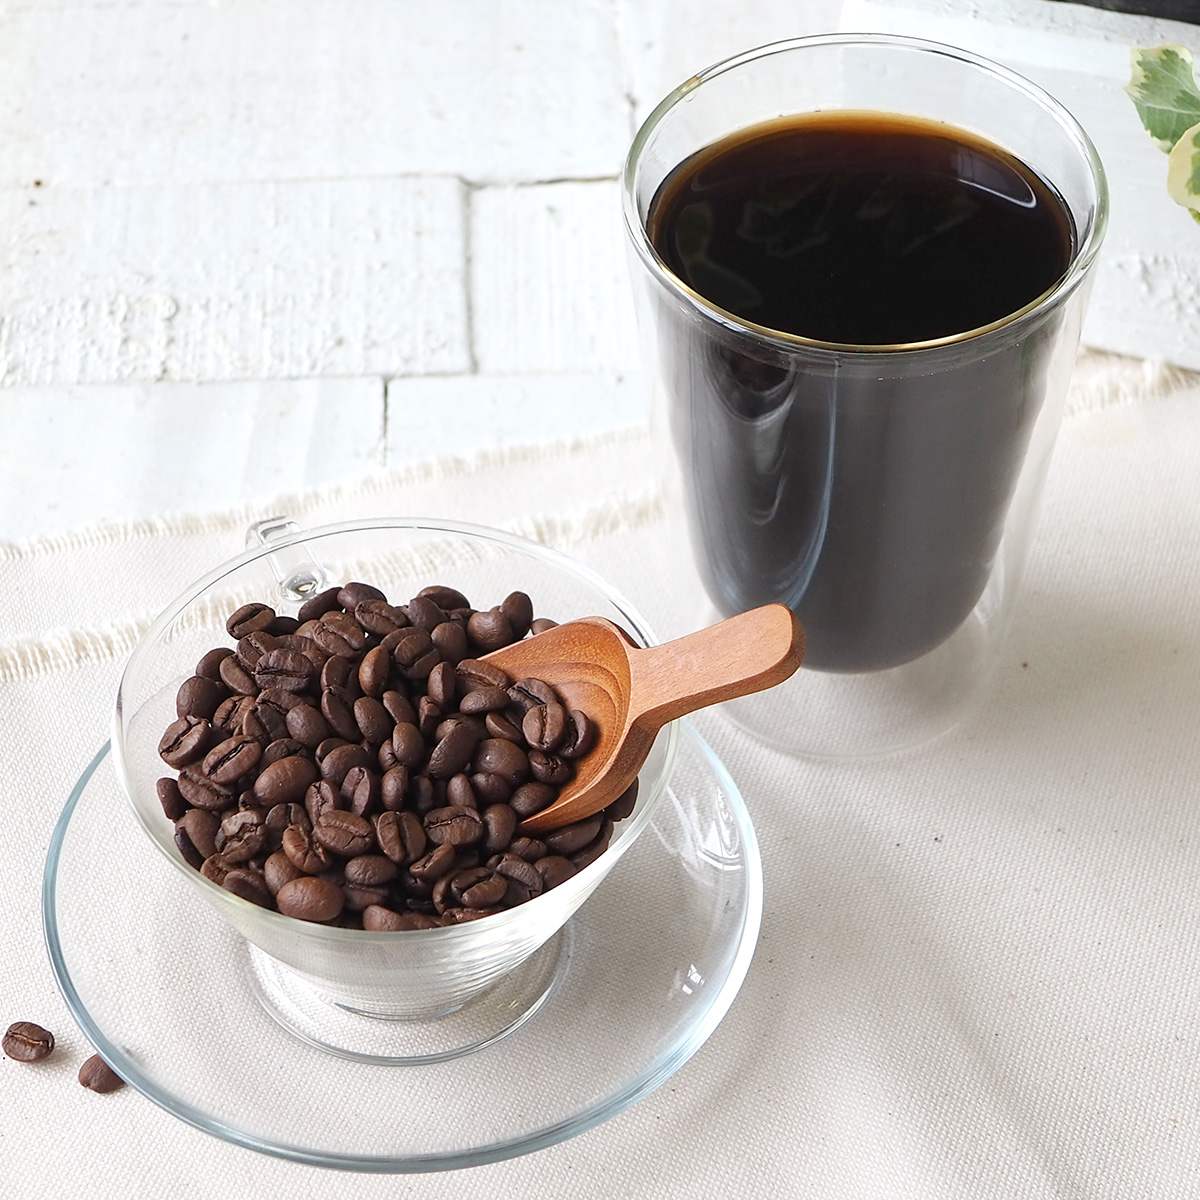 H&F BELX デカフェコーヒー焙煎豆 グアテマラ - コーヒー